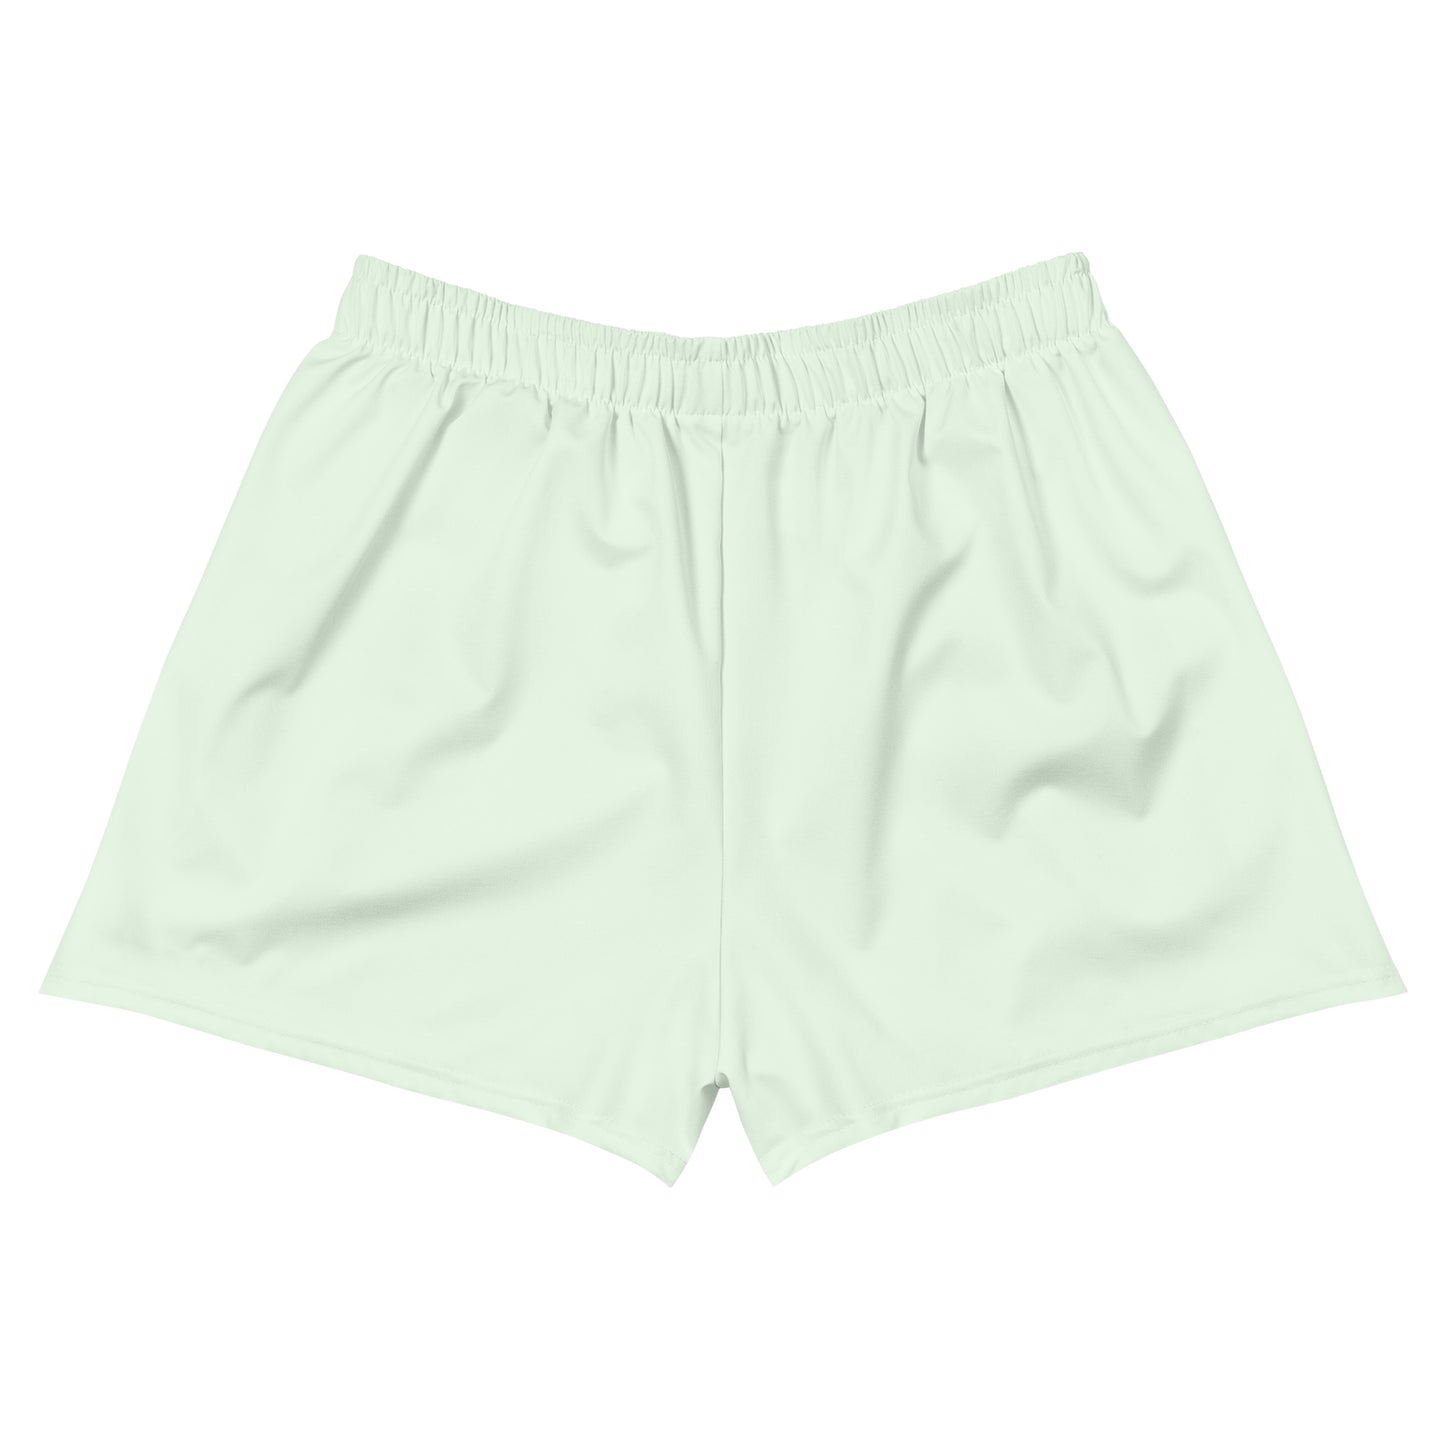 Malibu Shorts Mint